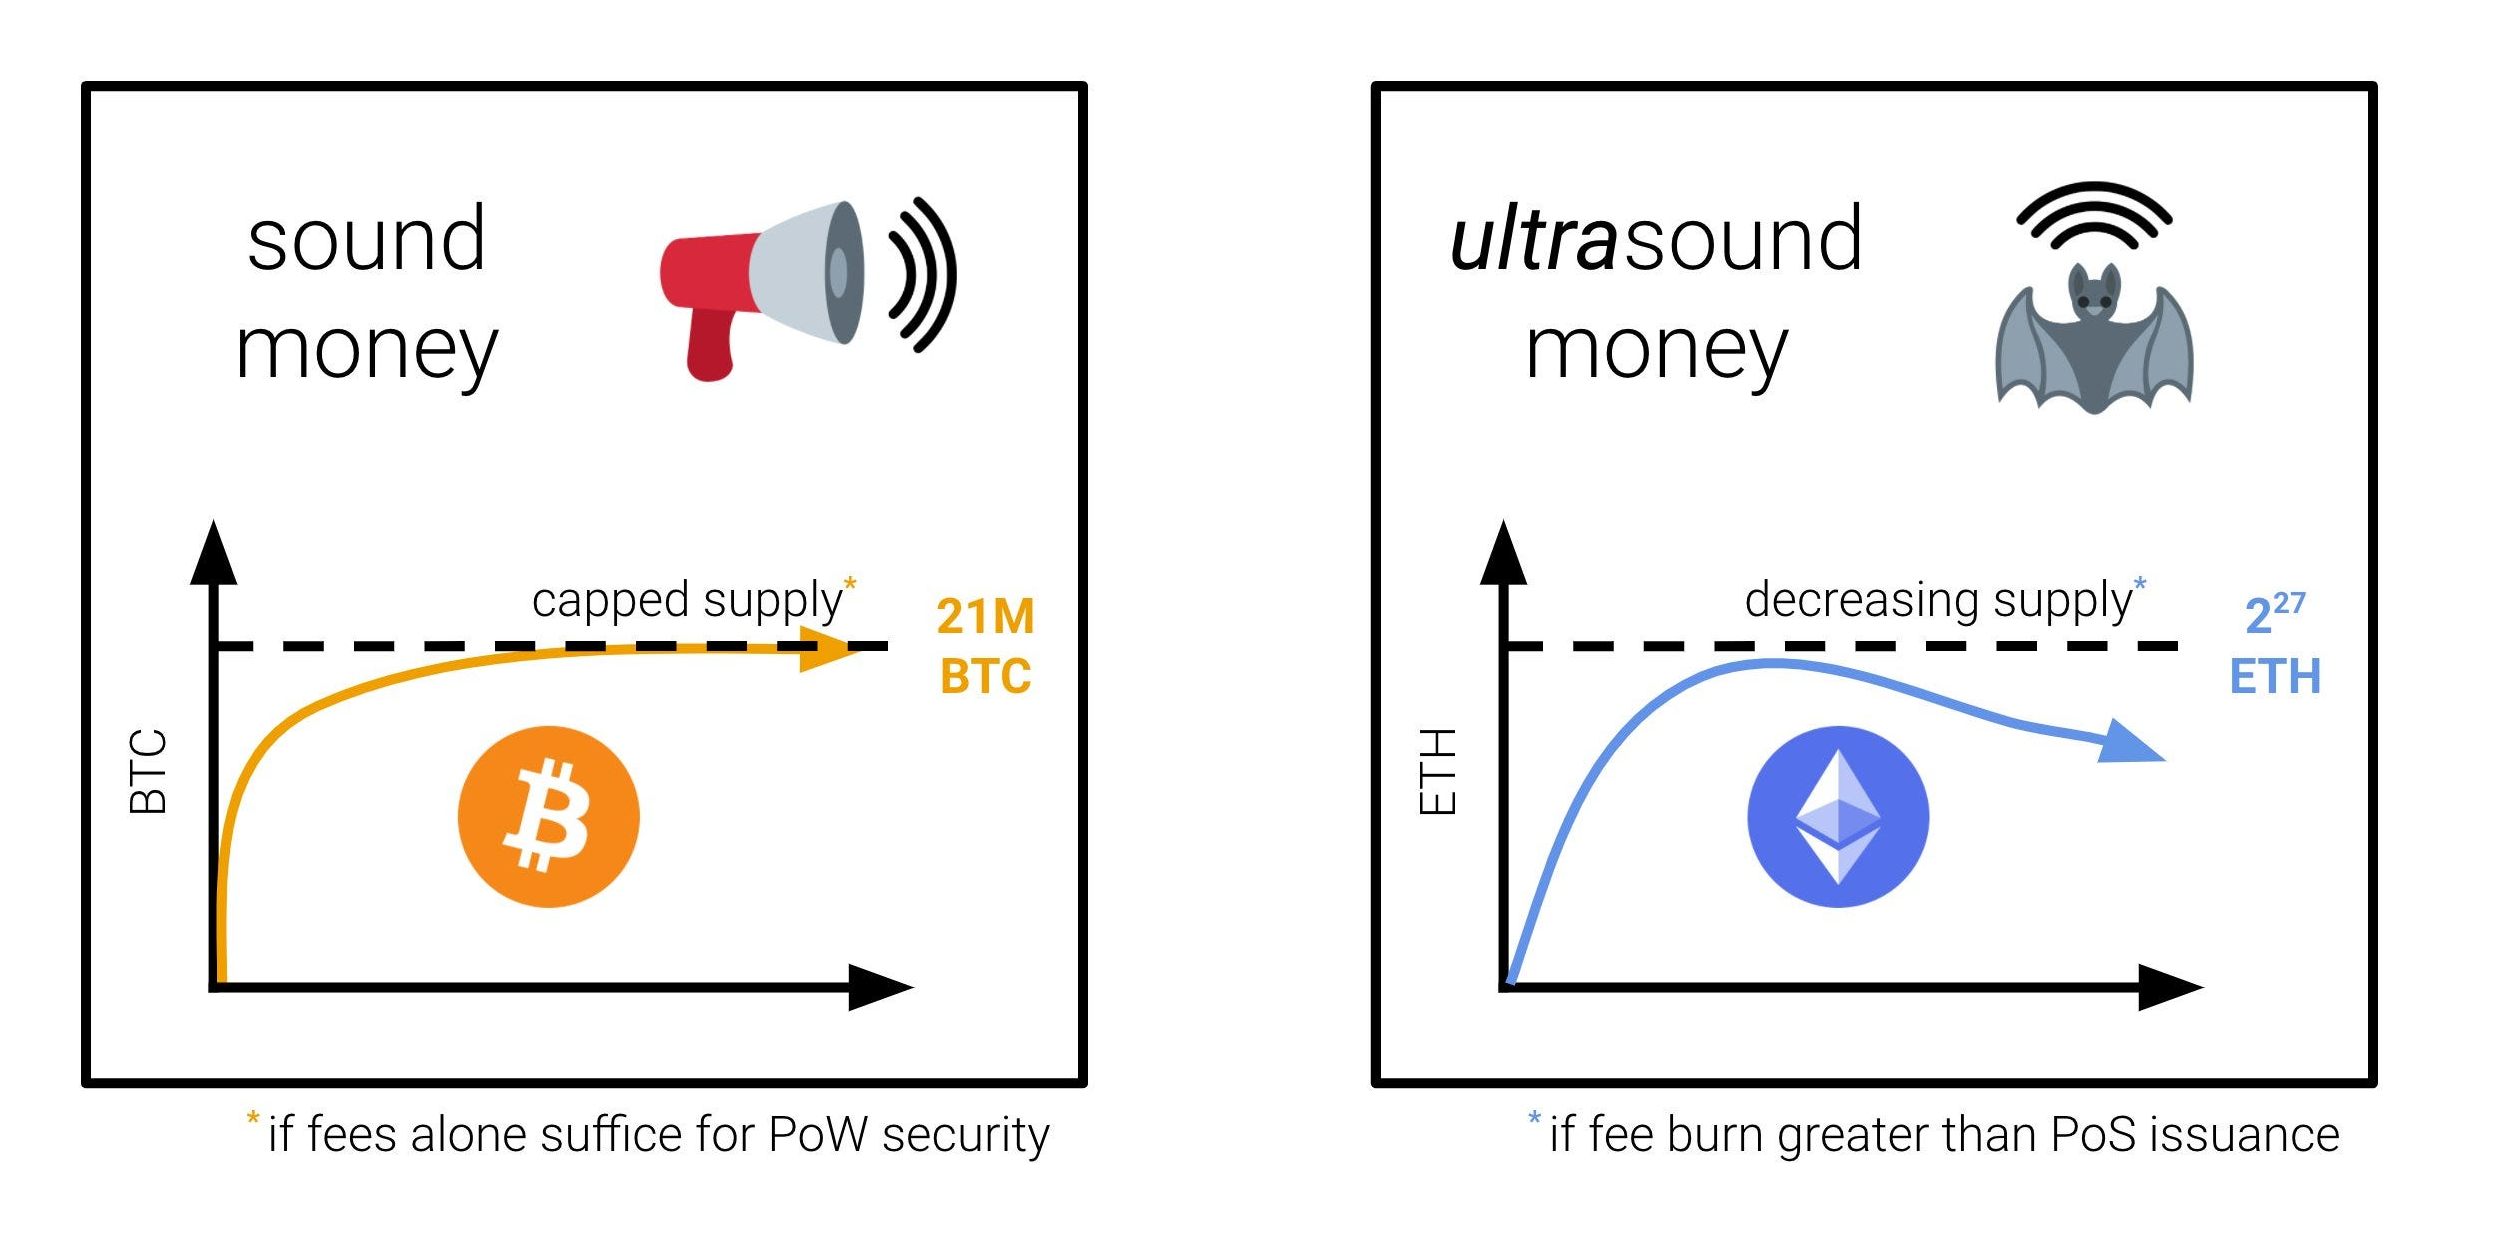 Ultra-sound money và sound money